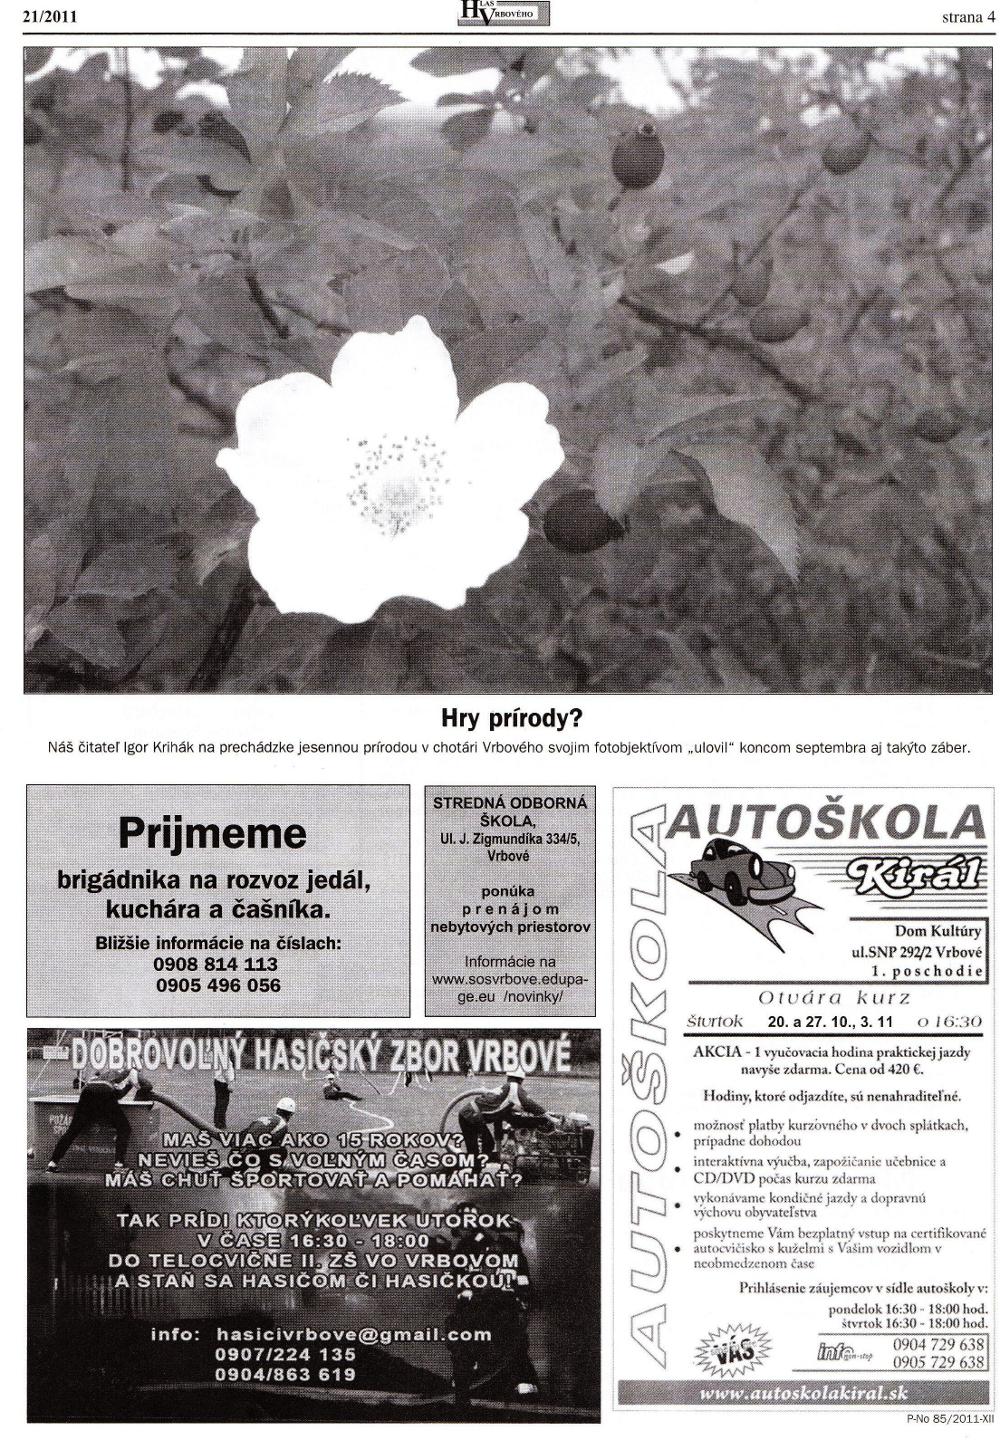 Hlas Vrbového 21/2011, strana 4